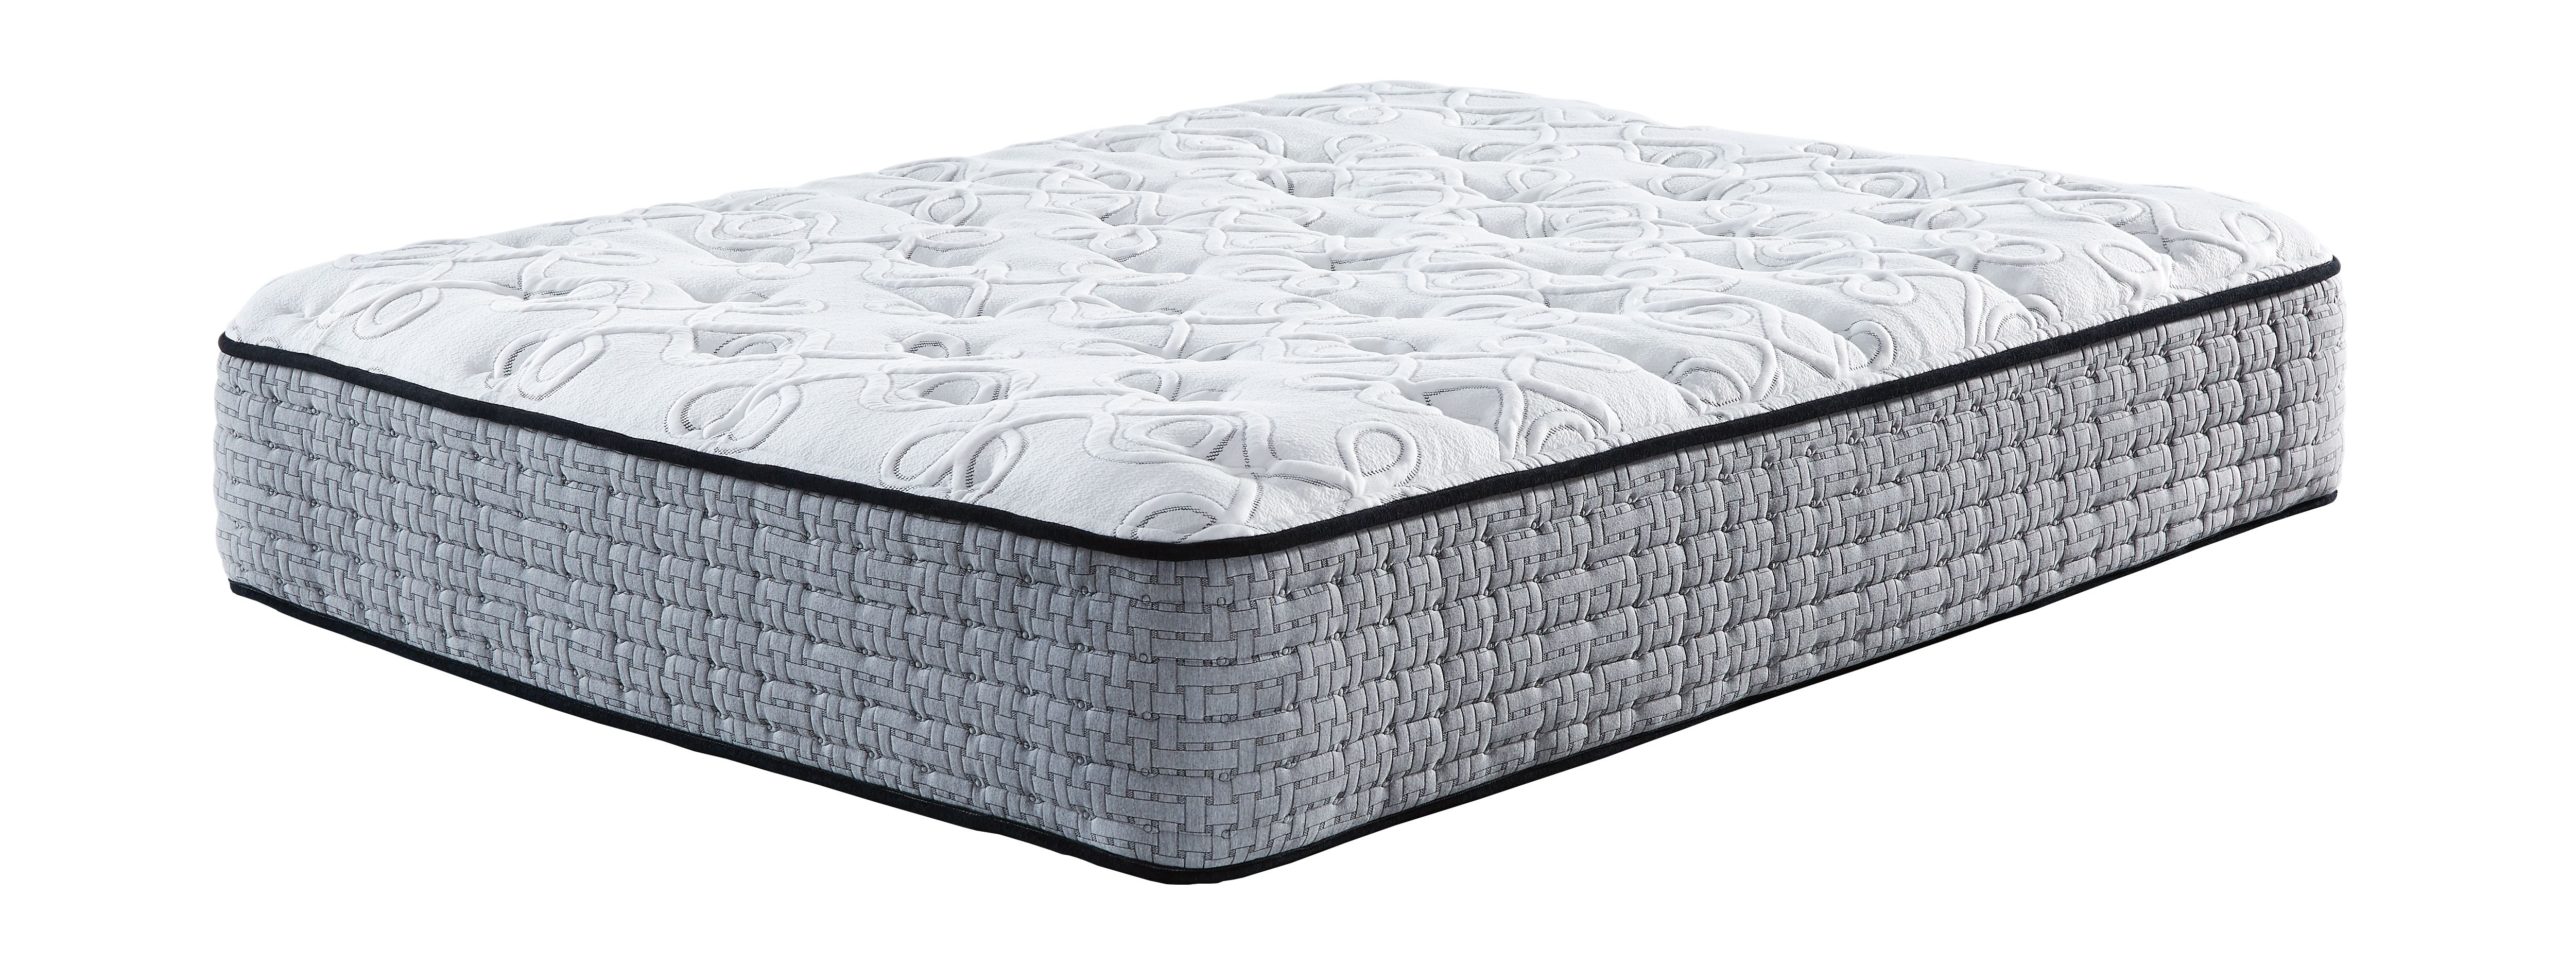 slumber1 white queen mattress